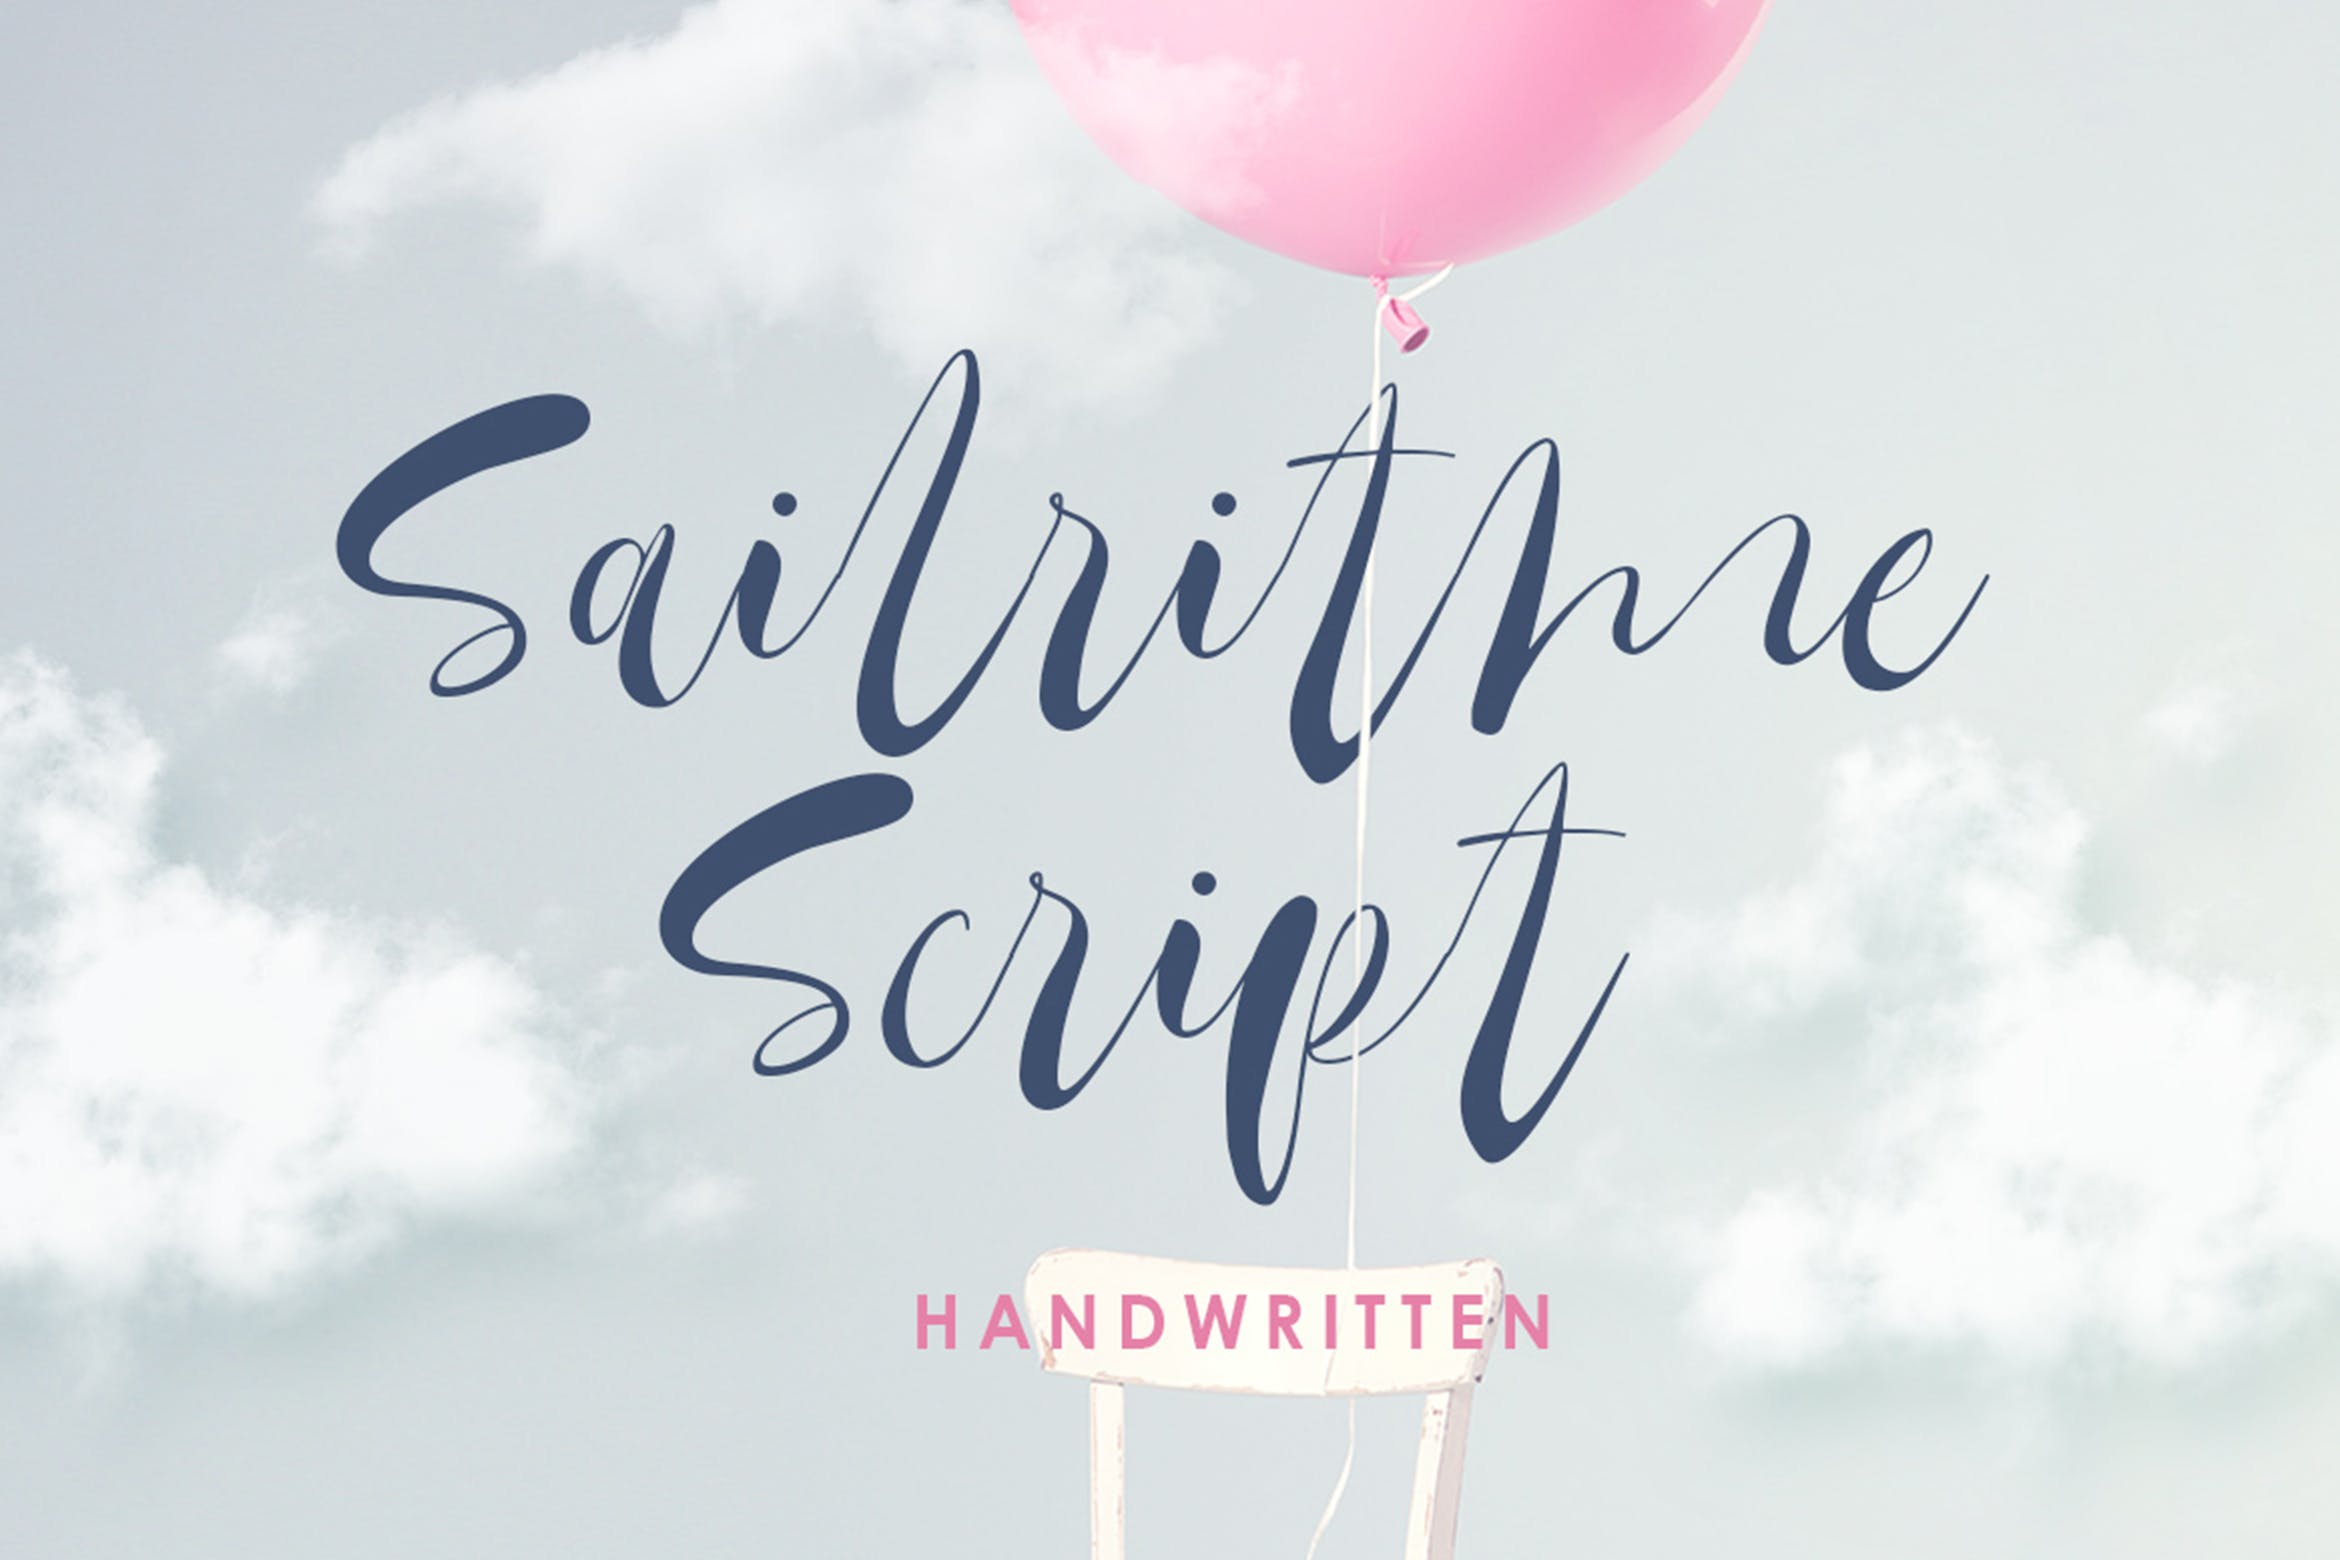 浪漫连笔细线条英文手写字体 Sailritme – Handwritten Script 设计素材 第1张